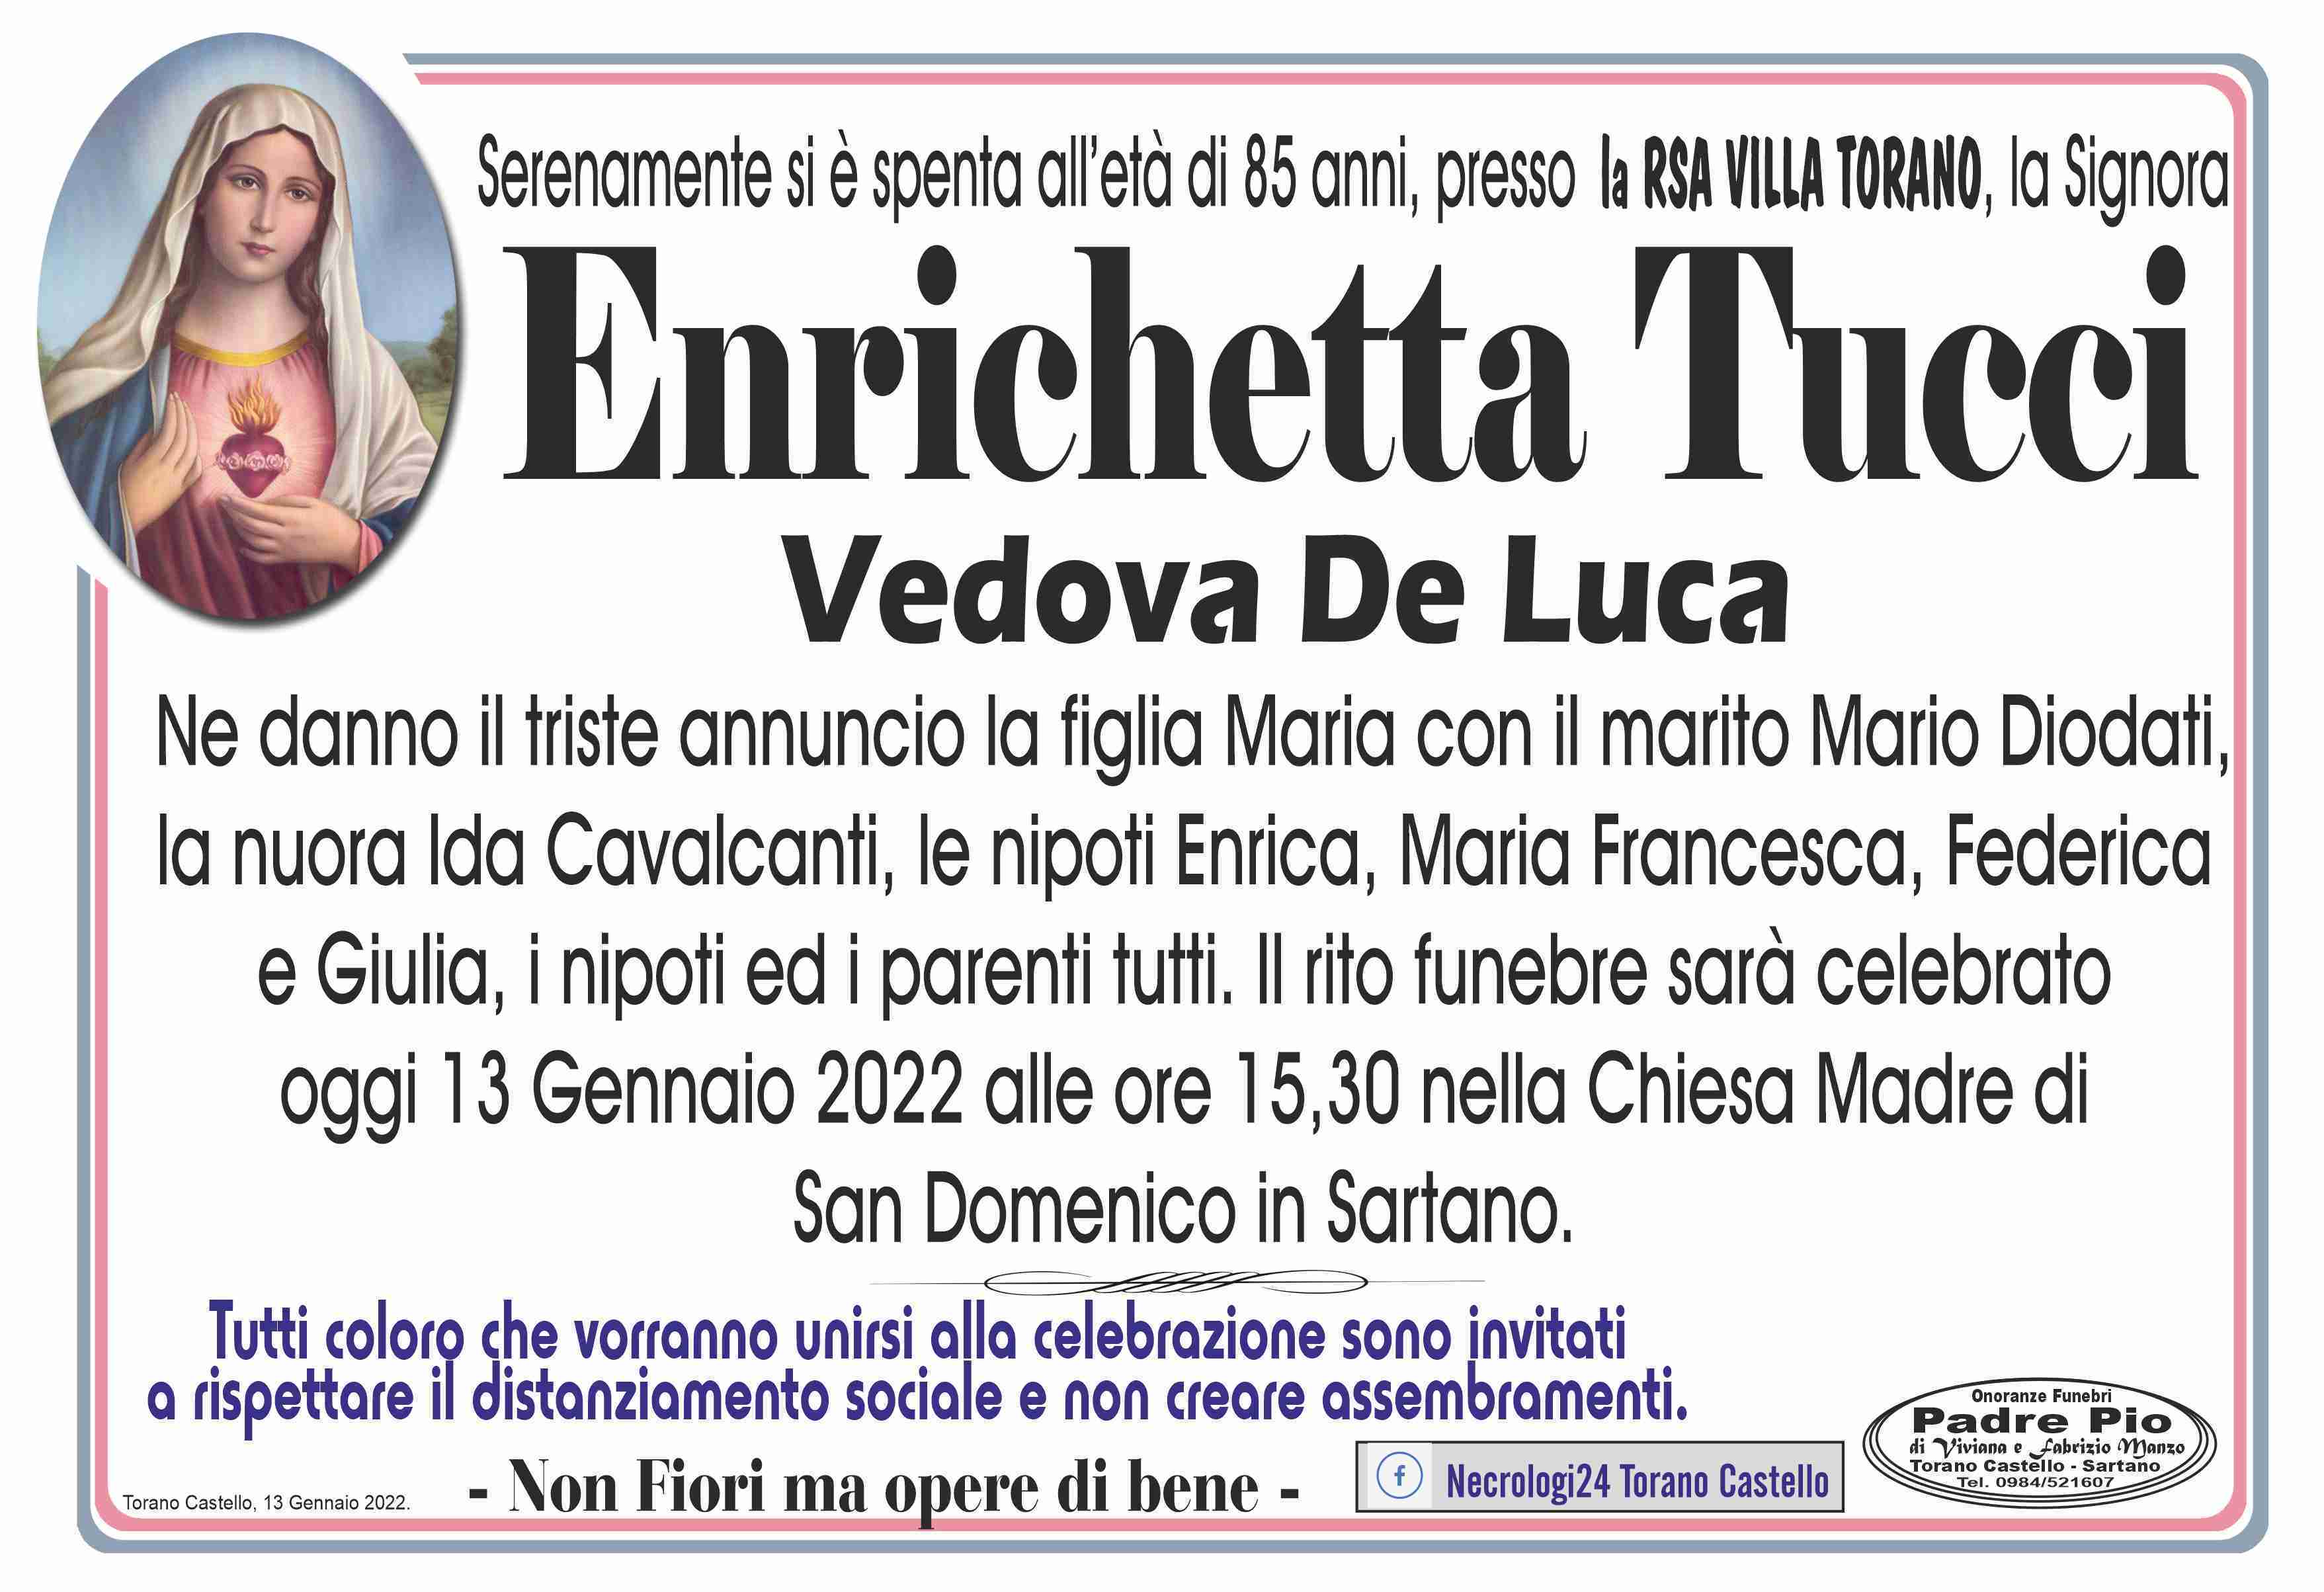 Enrichetta Tucci